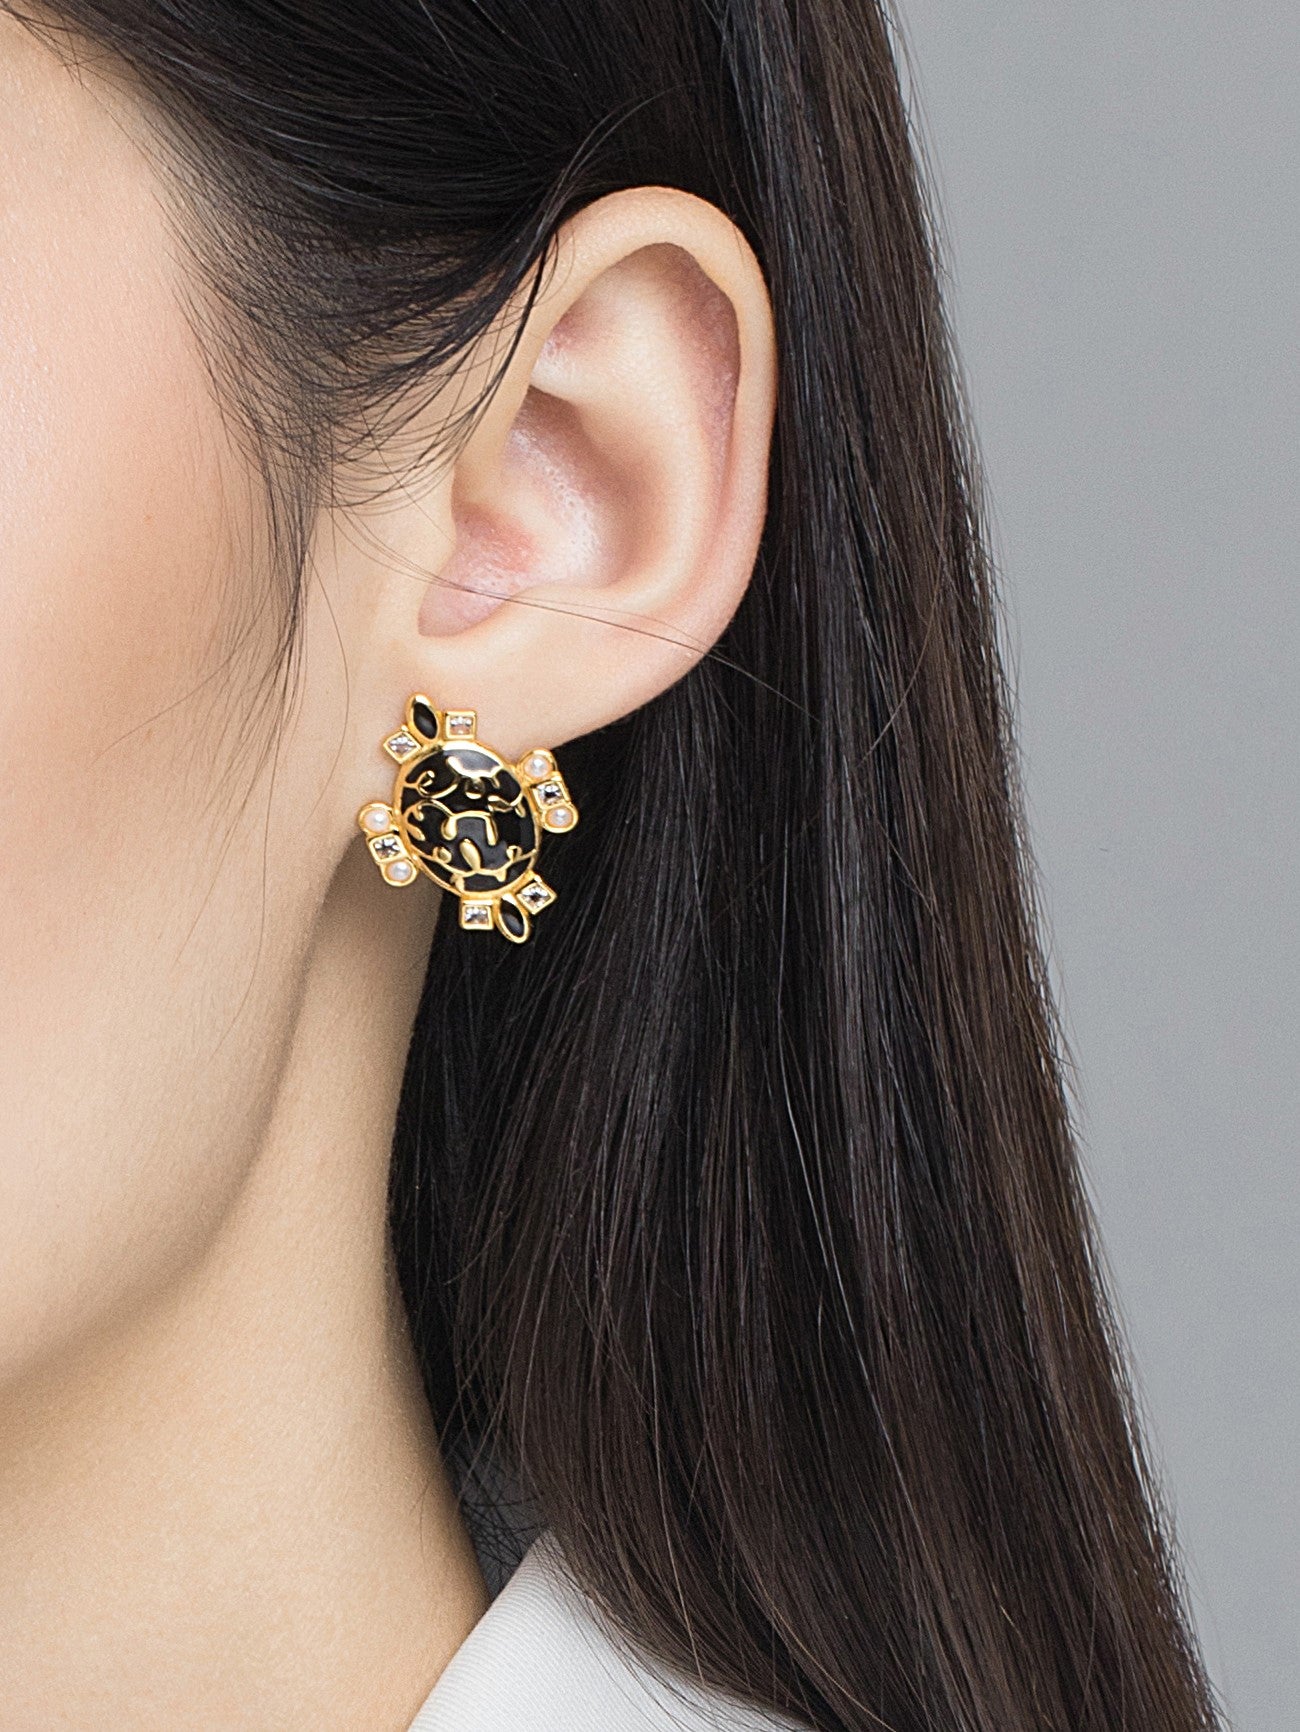 Black & Golden Oval Enamel with Pearl Studs Earrings for Women